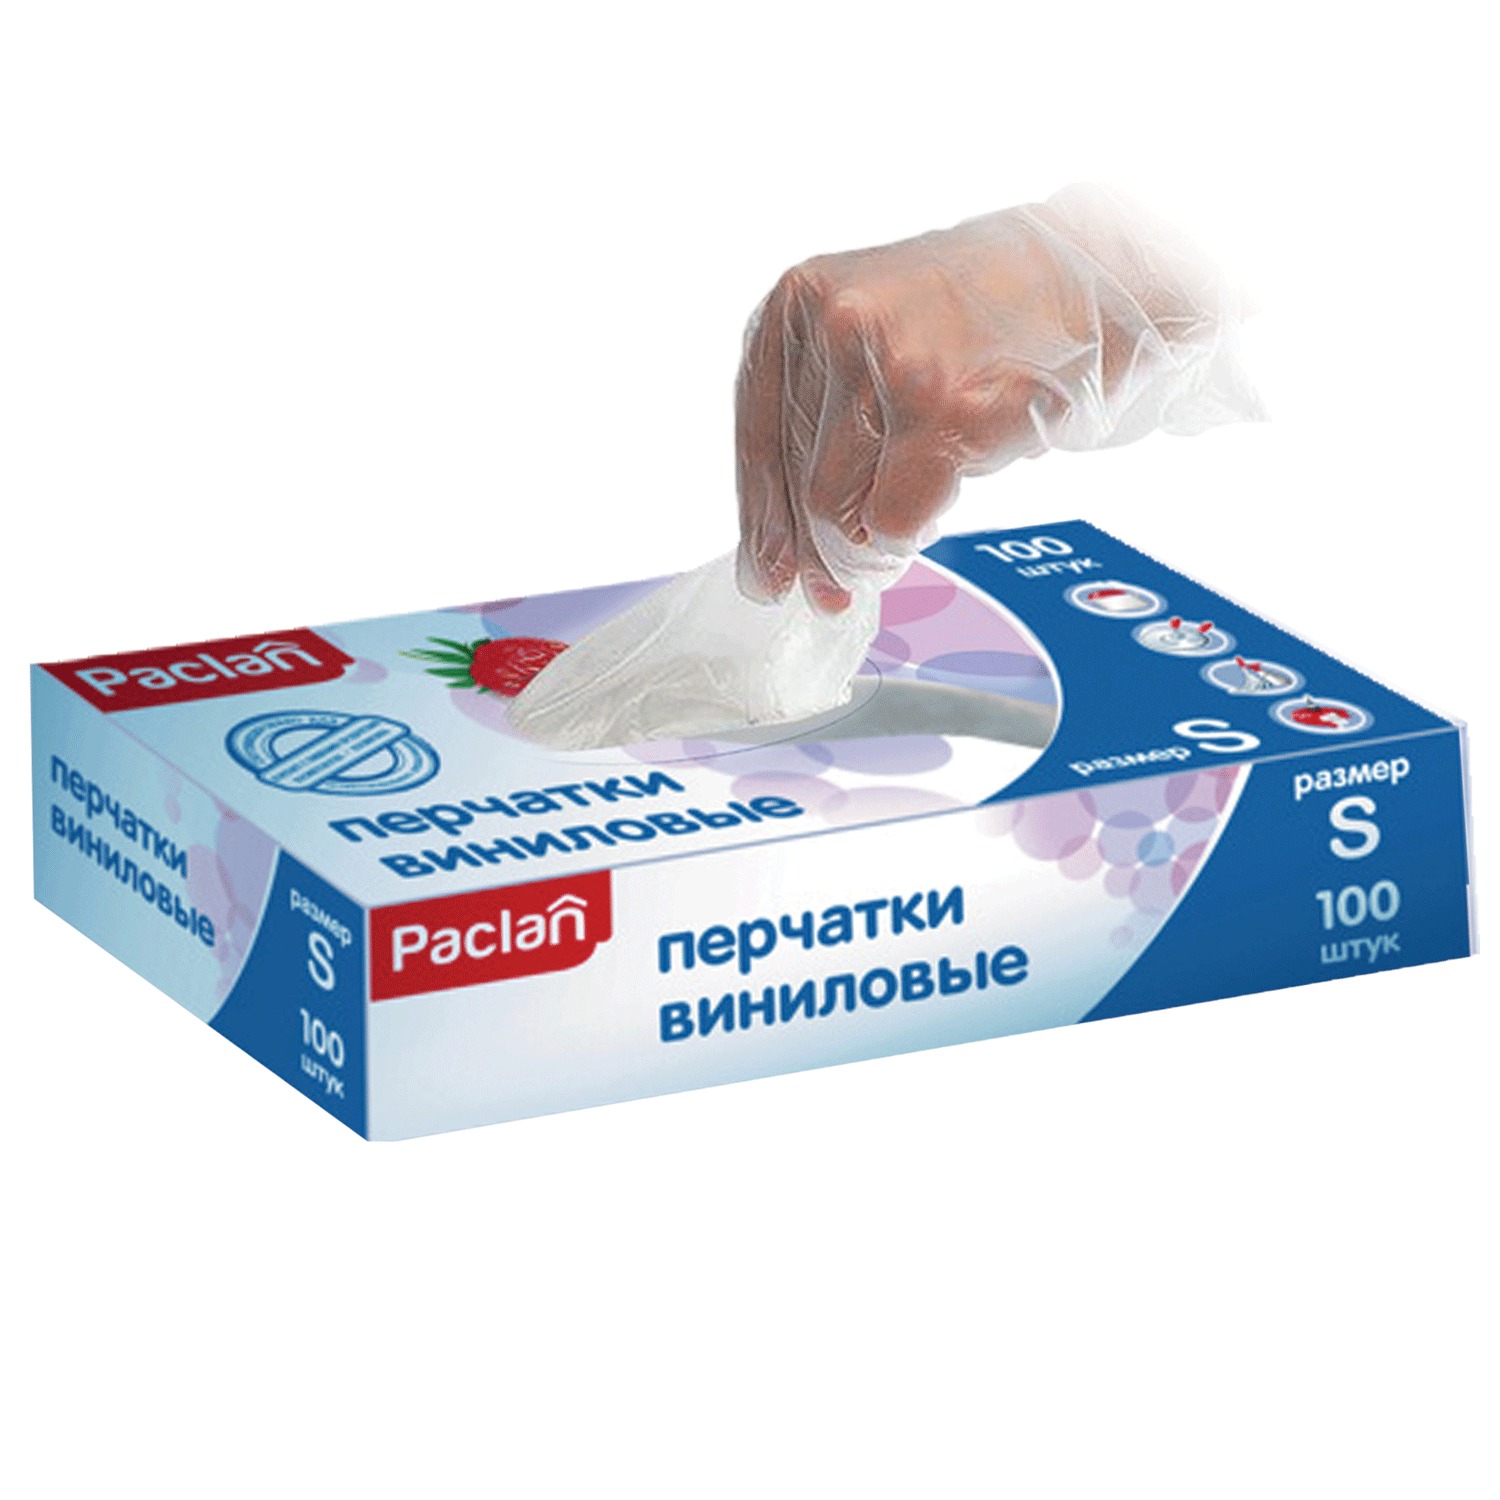 Paclan Перчатки виниловые бело-прозрачные 100шт